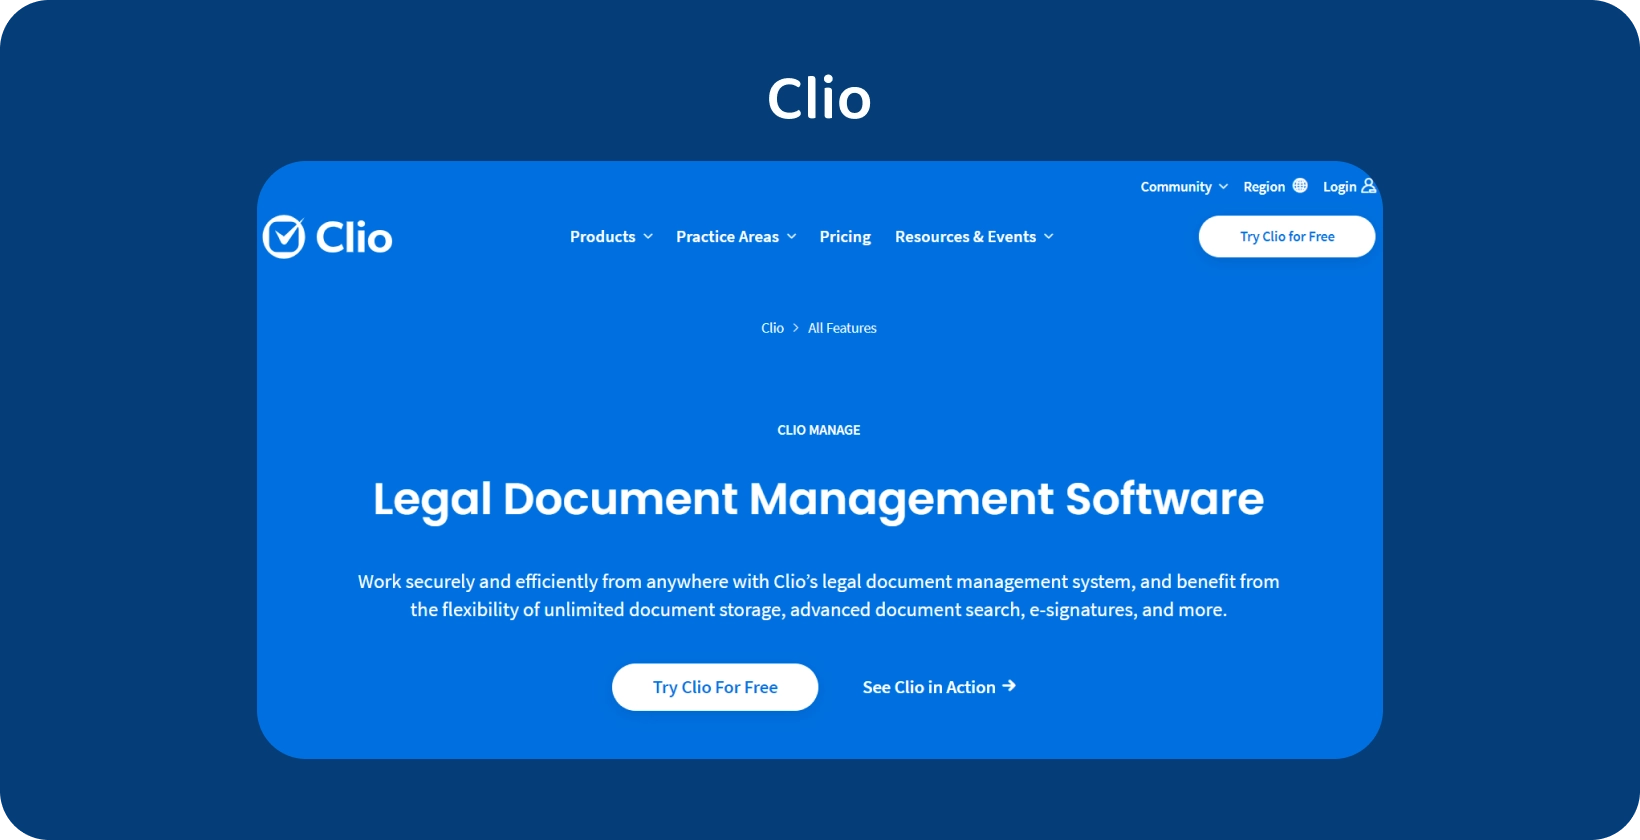 Clio brukergrensesnitt viser sin juridiske dokumenthåndteringsprogramvare, som optimaliserer organisert posthåndtering.